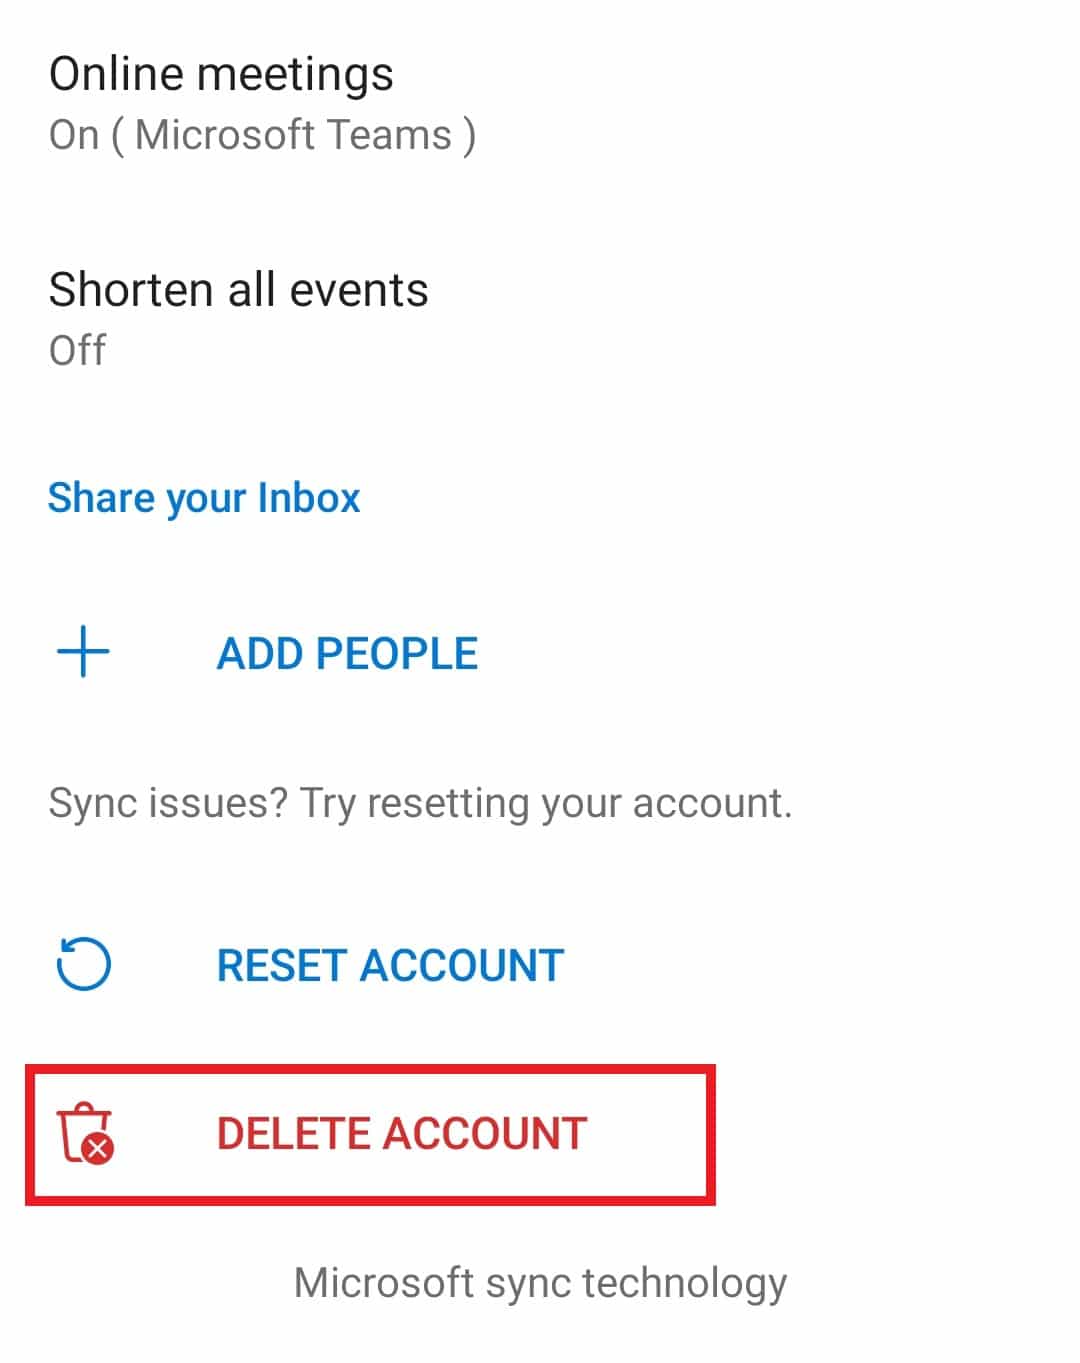 كيف يمكنني تسجيل الخروج من Outlook Mobile؟ 10